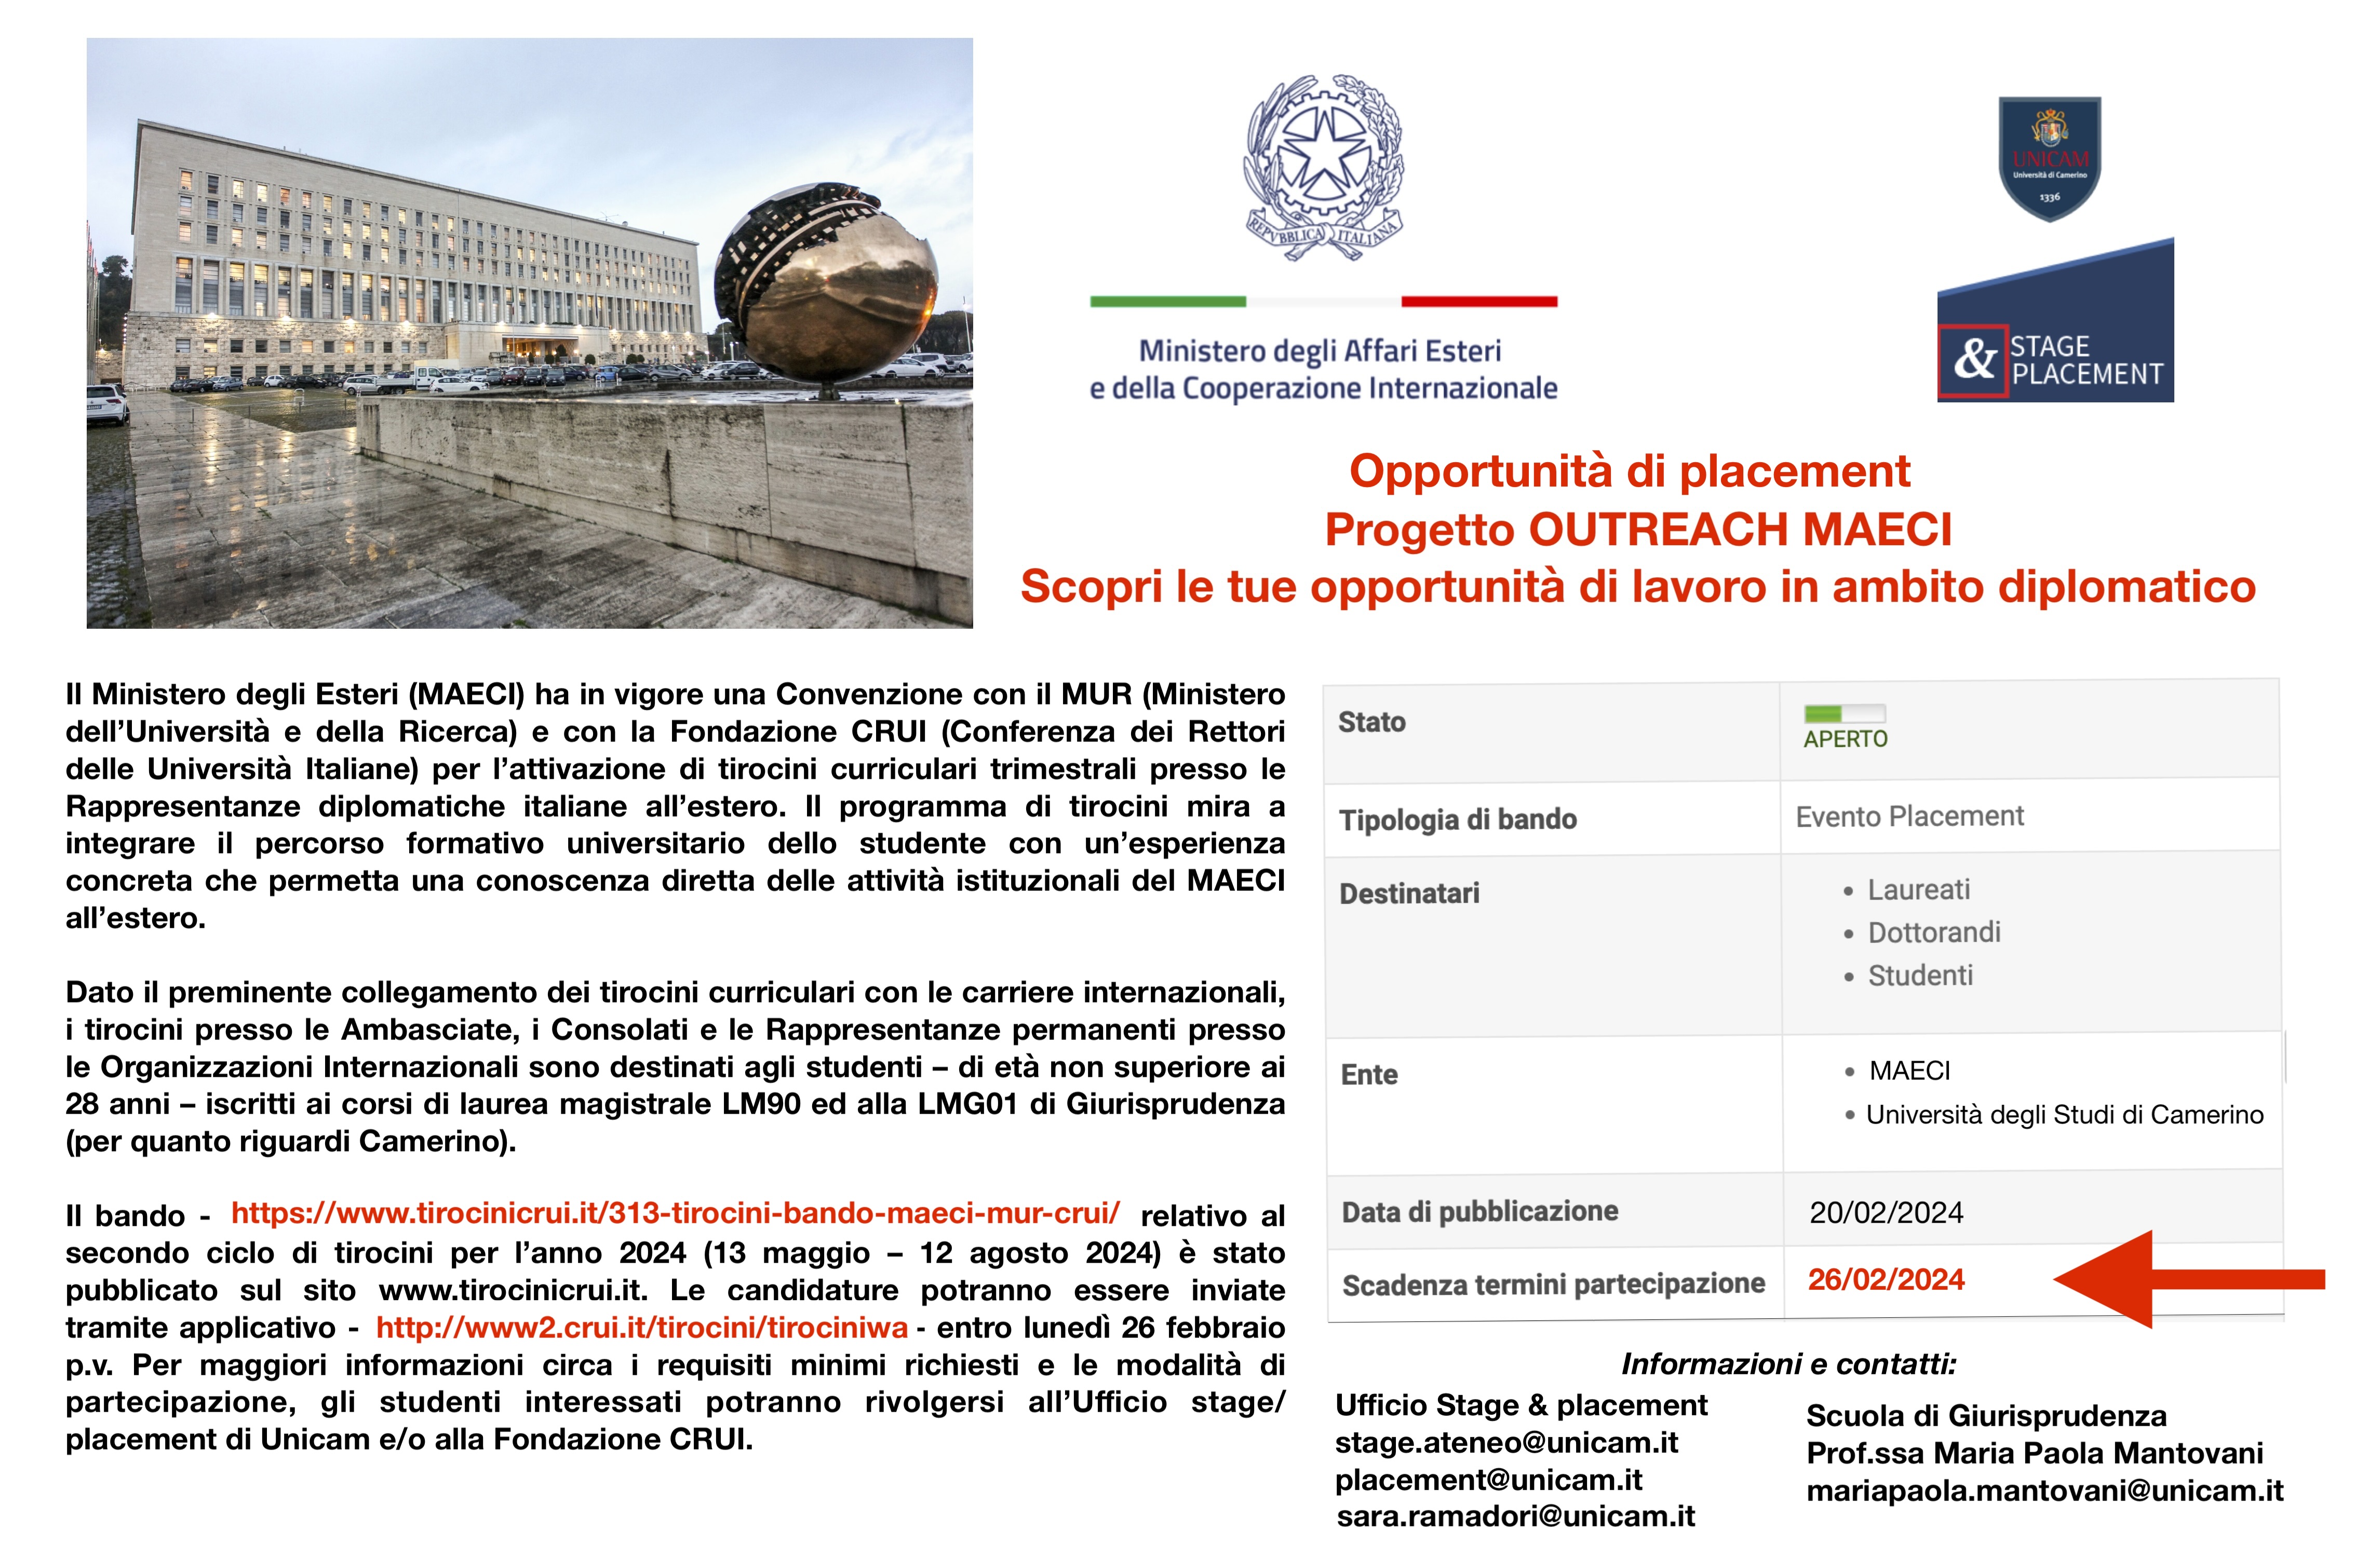 Opportunità di placement: tirocini curriculari trimestrali presso le Rappresentanze diplomatiche italiane all'estero